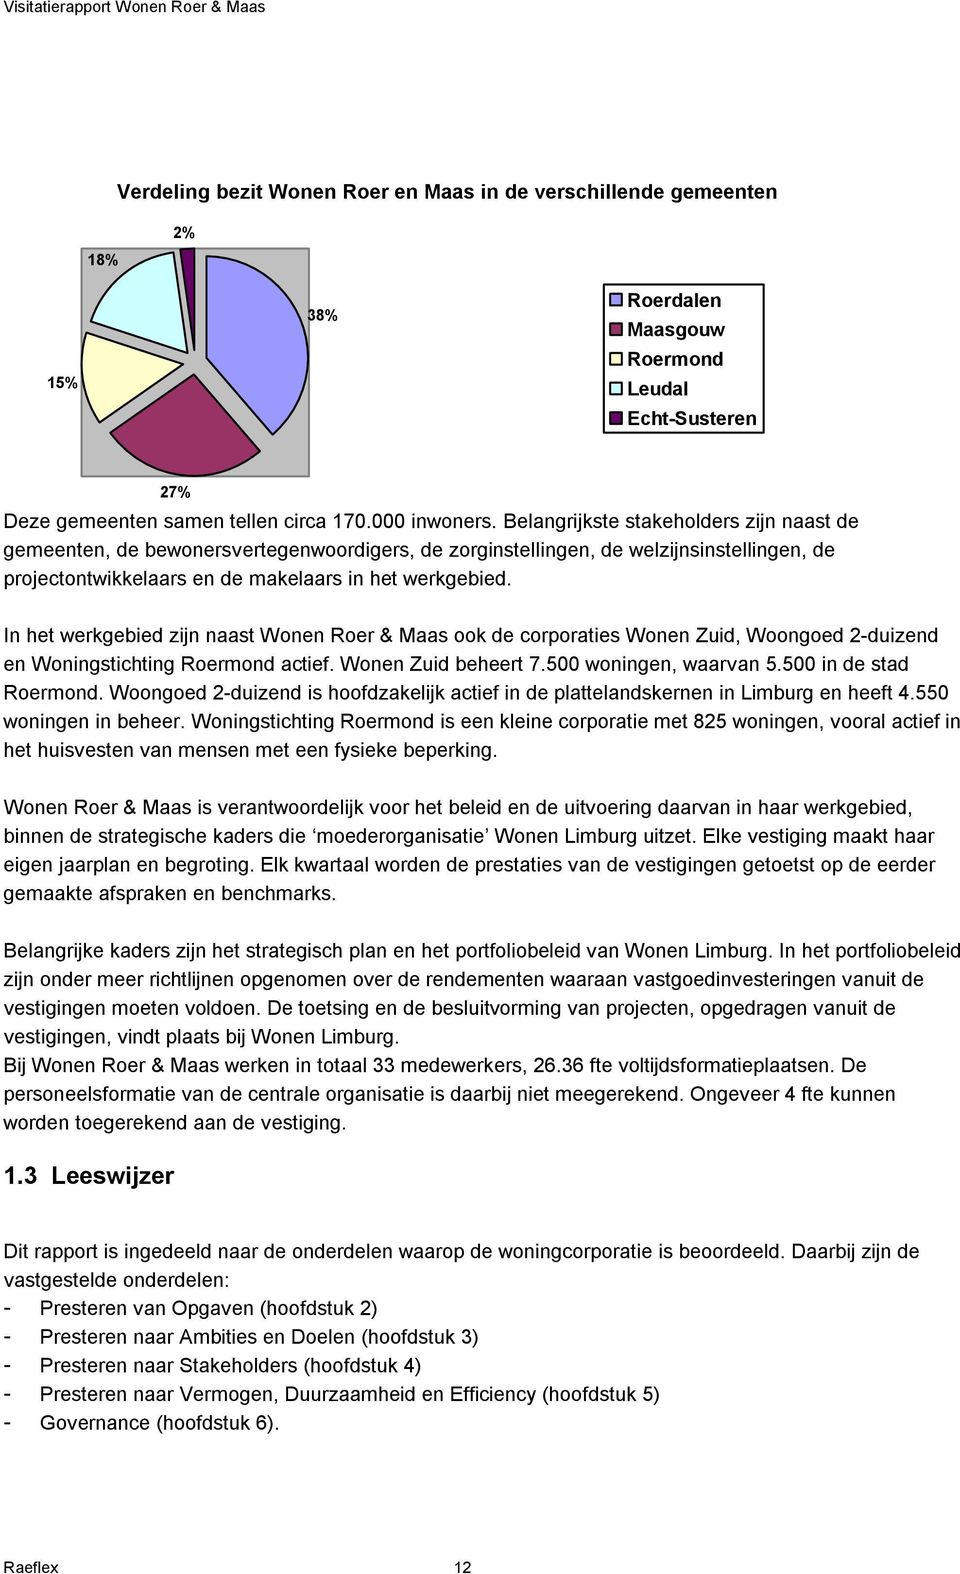 In het werkgebied zijn naast Wonen Roer & Maas ook de corporaties Wonen Zuid, Woongoed 2-duizend en Woningstichting Roermond actief. Wonen Zuid beheert 7.500 woningen, waarvan 5.